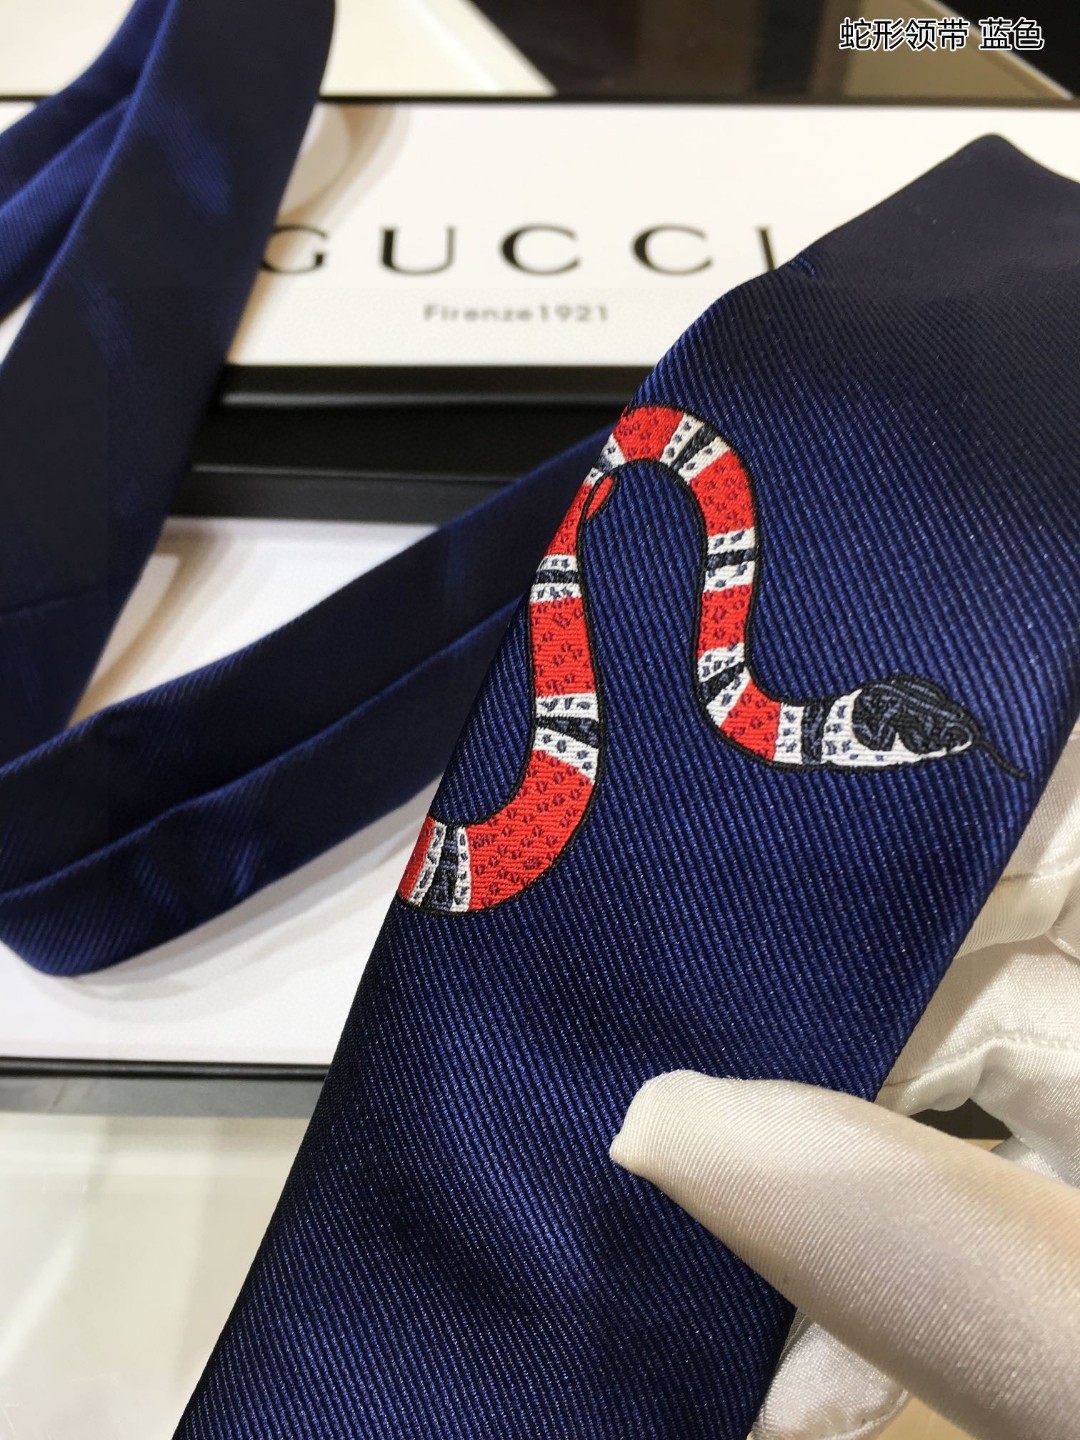 G家男士领带系列蛇形领带稀有采用经典主题动物绣花展现精湛手工与时尚优雅的理想选择这款领带将标志性完美的结